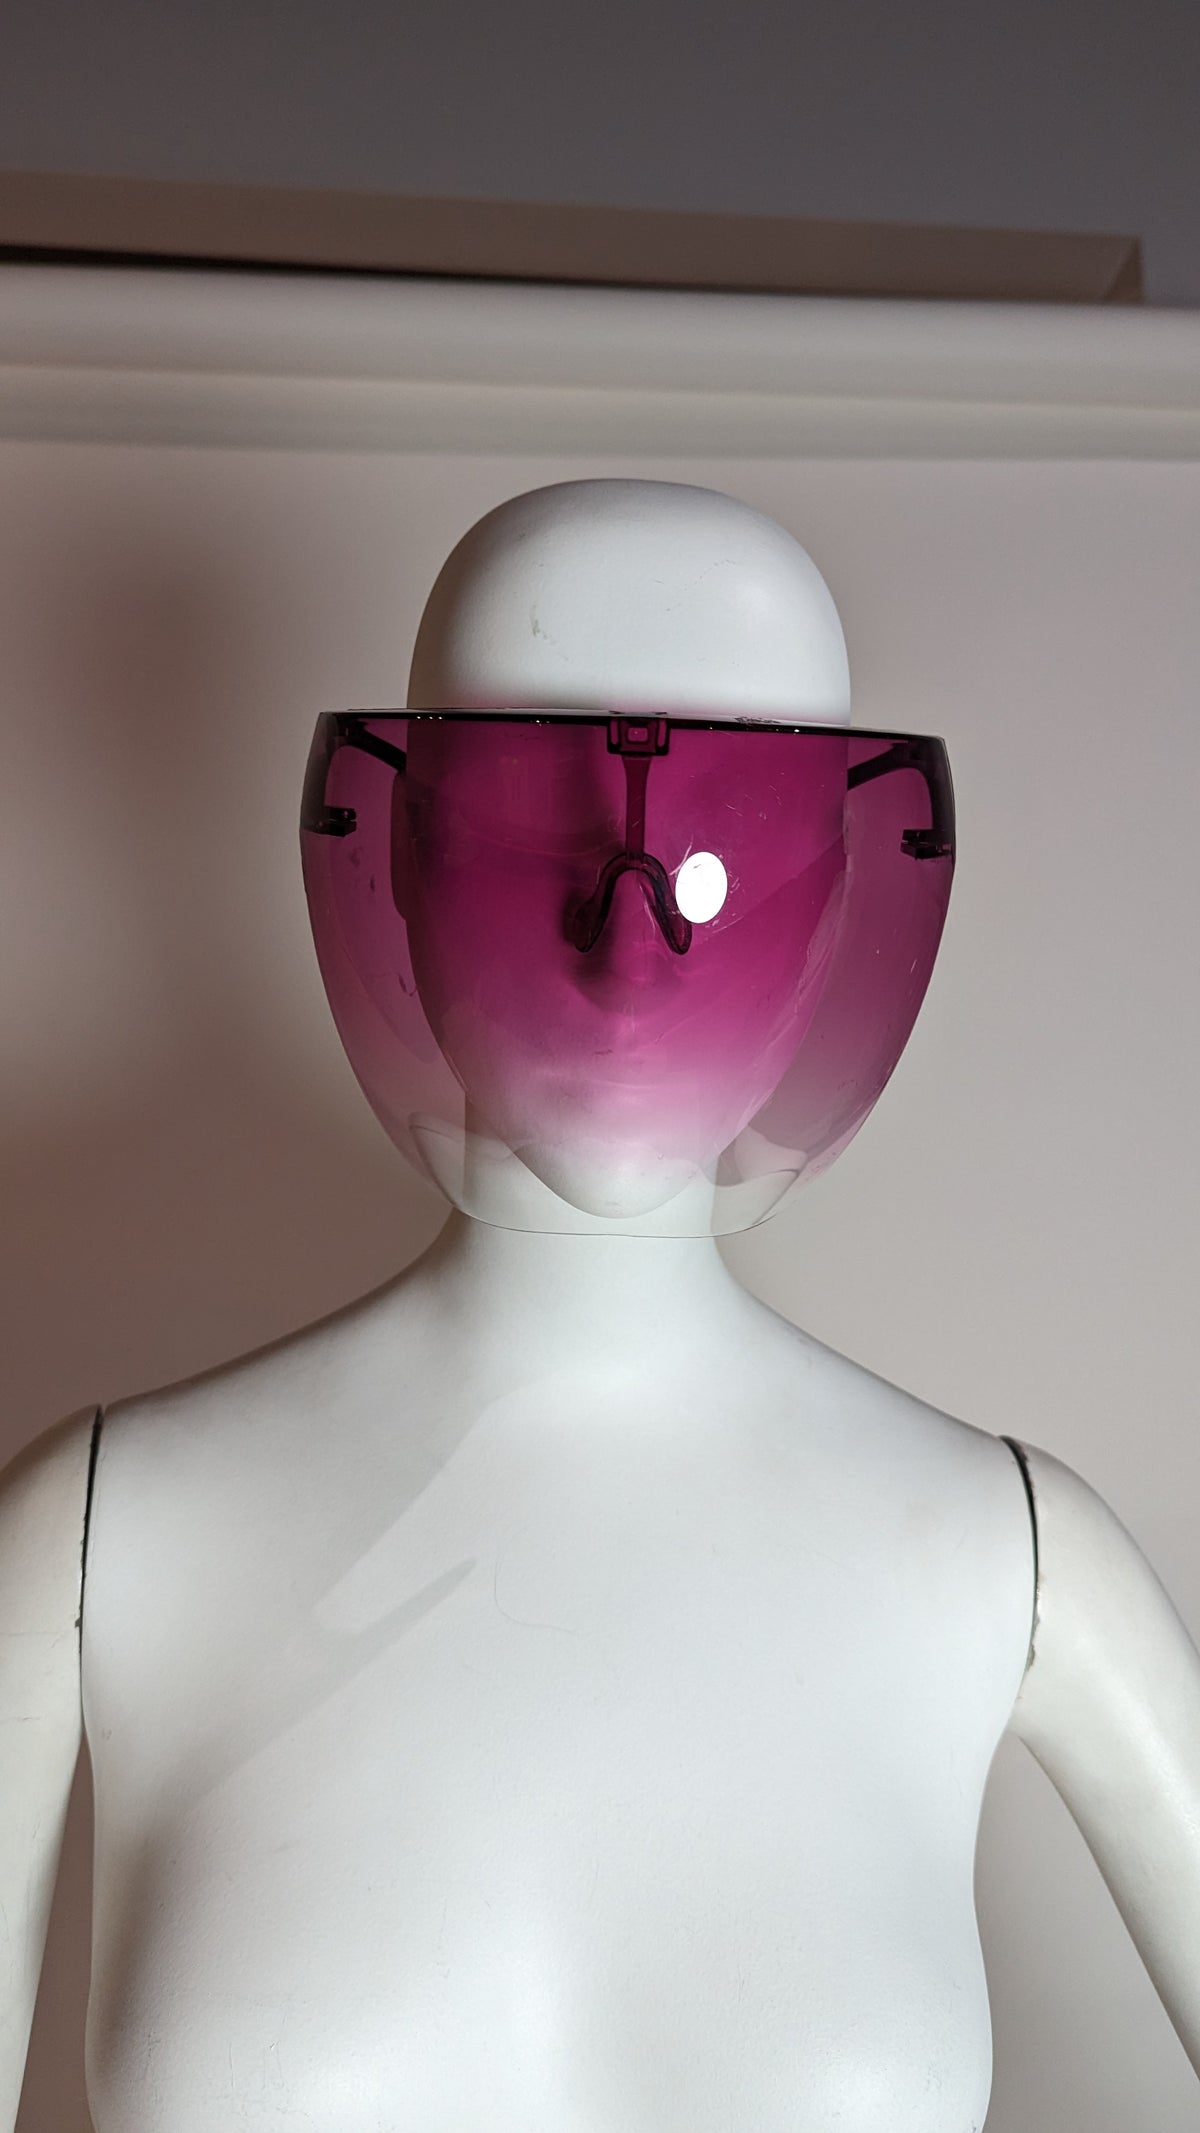 VENTA DE MUESTRA - Escudo facial de plástico Ombre púrpura - VENTA FINAL